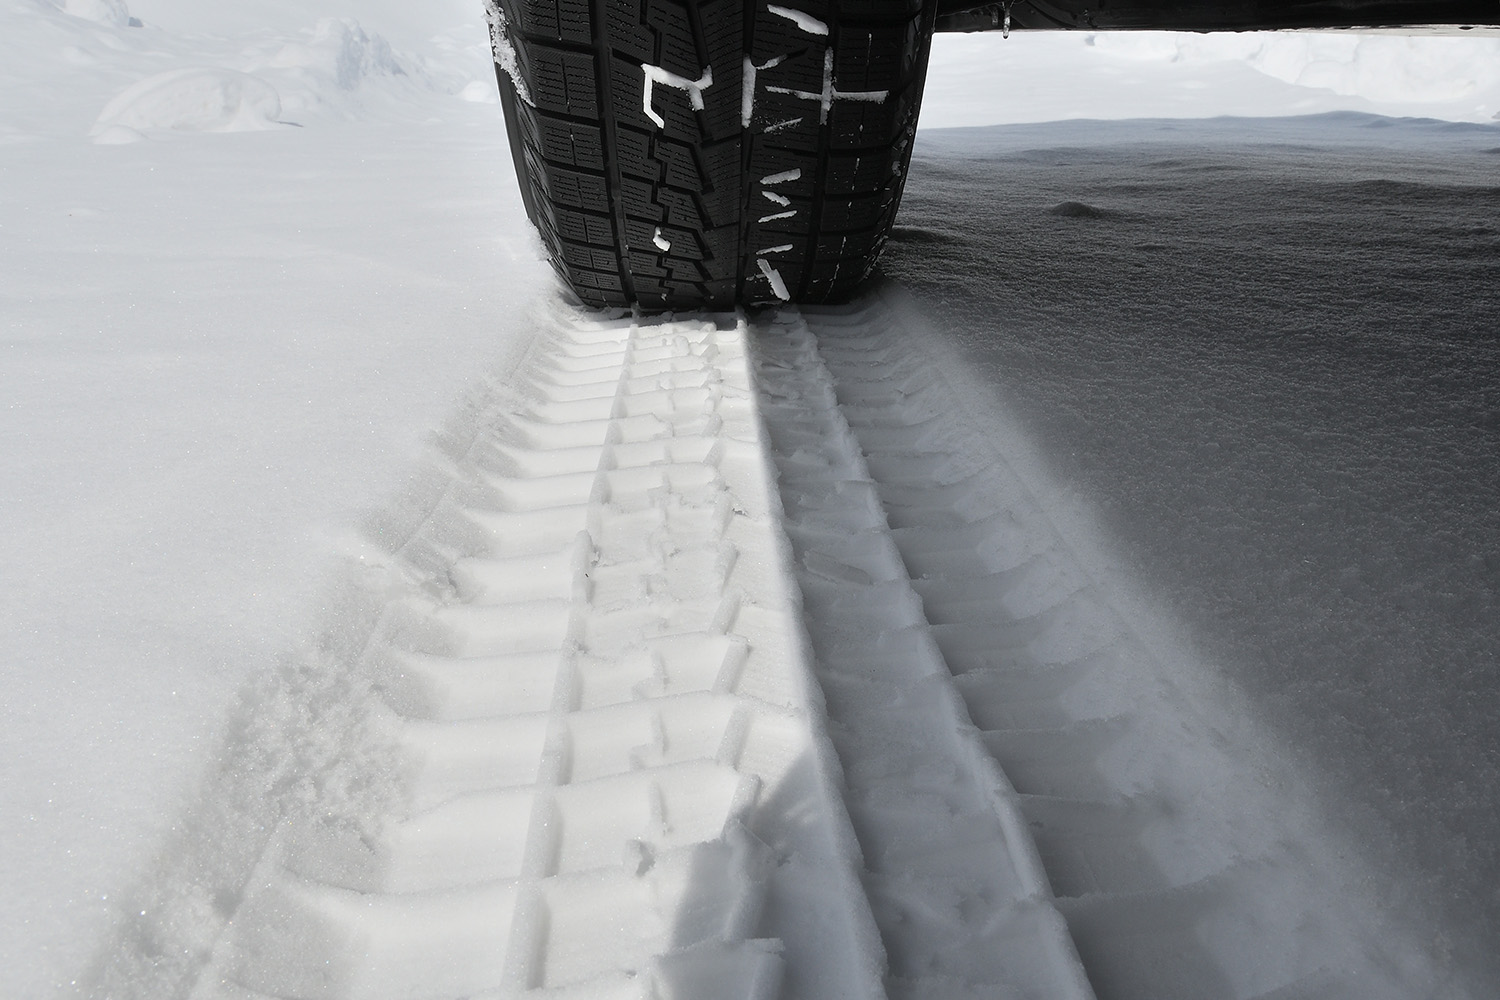 雪上に残されたスタッドレスタイヤのトレッドパターン 〜 画像6